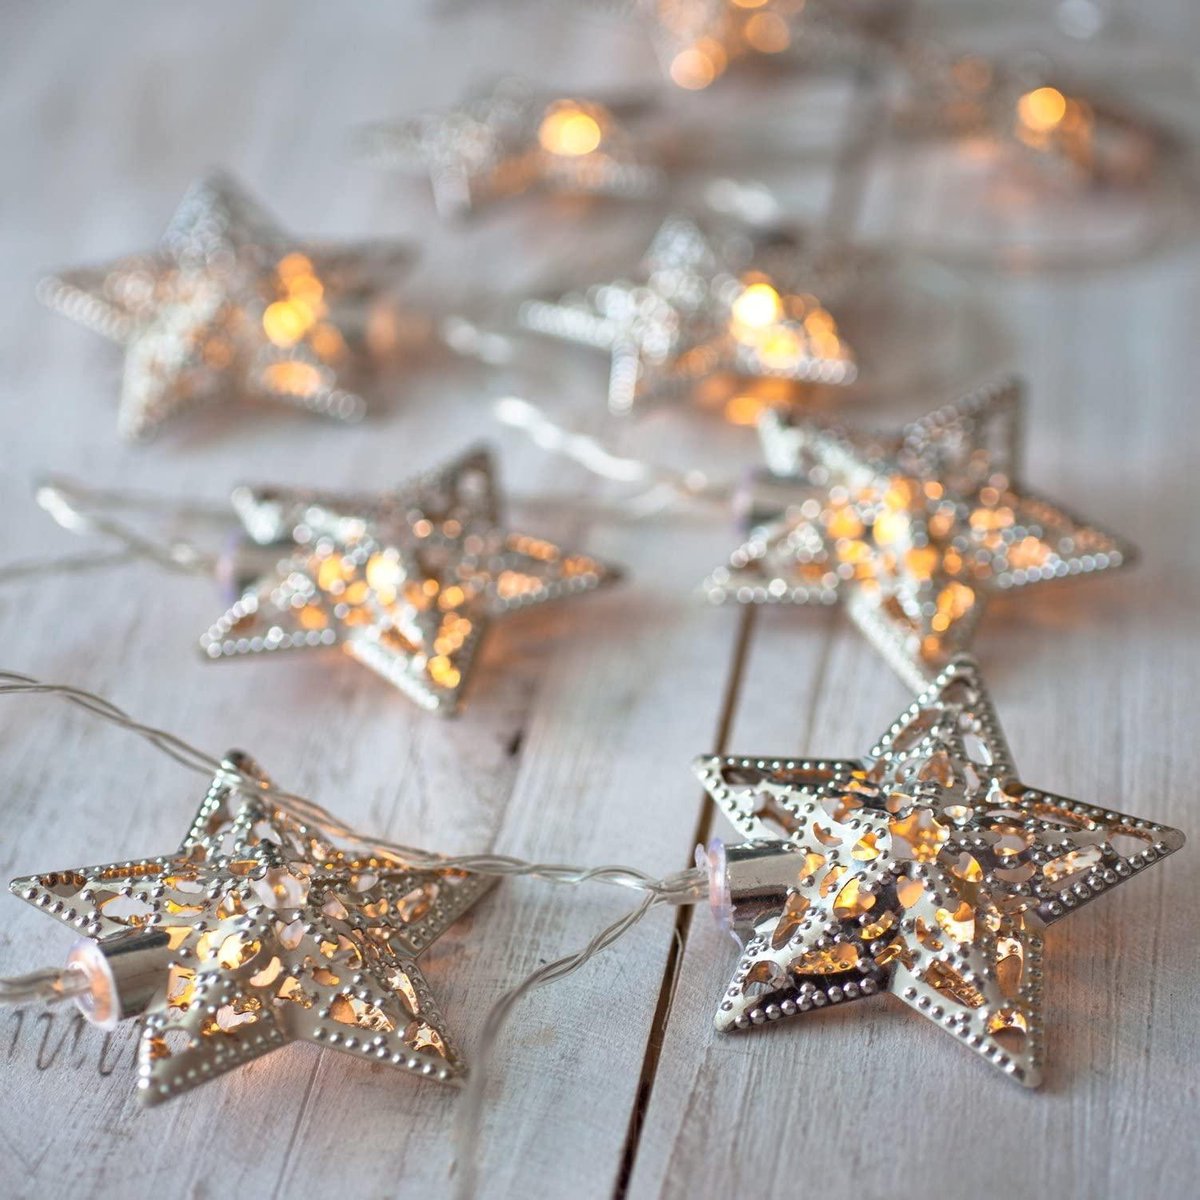 Meisterhome 10 Led Metalen sterren zilverkleurig - kerst sfeerverlichting decoratie - breng warmte en sfeer in huis met deze zilveren sterren op batterijen